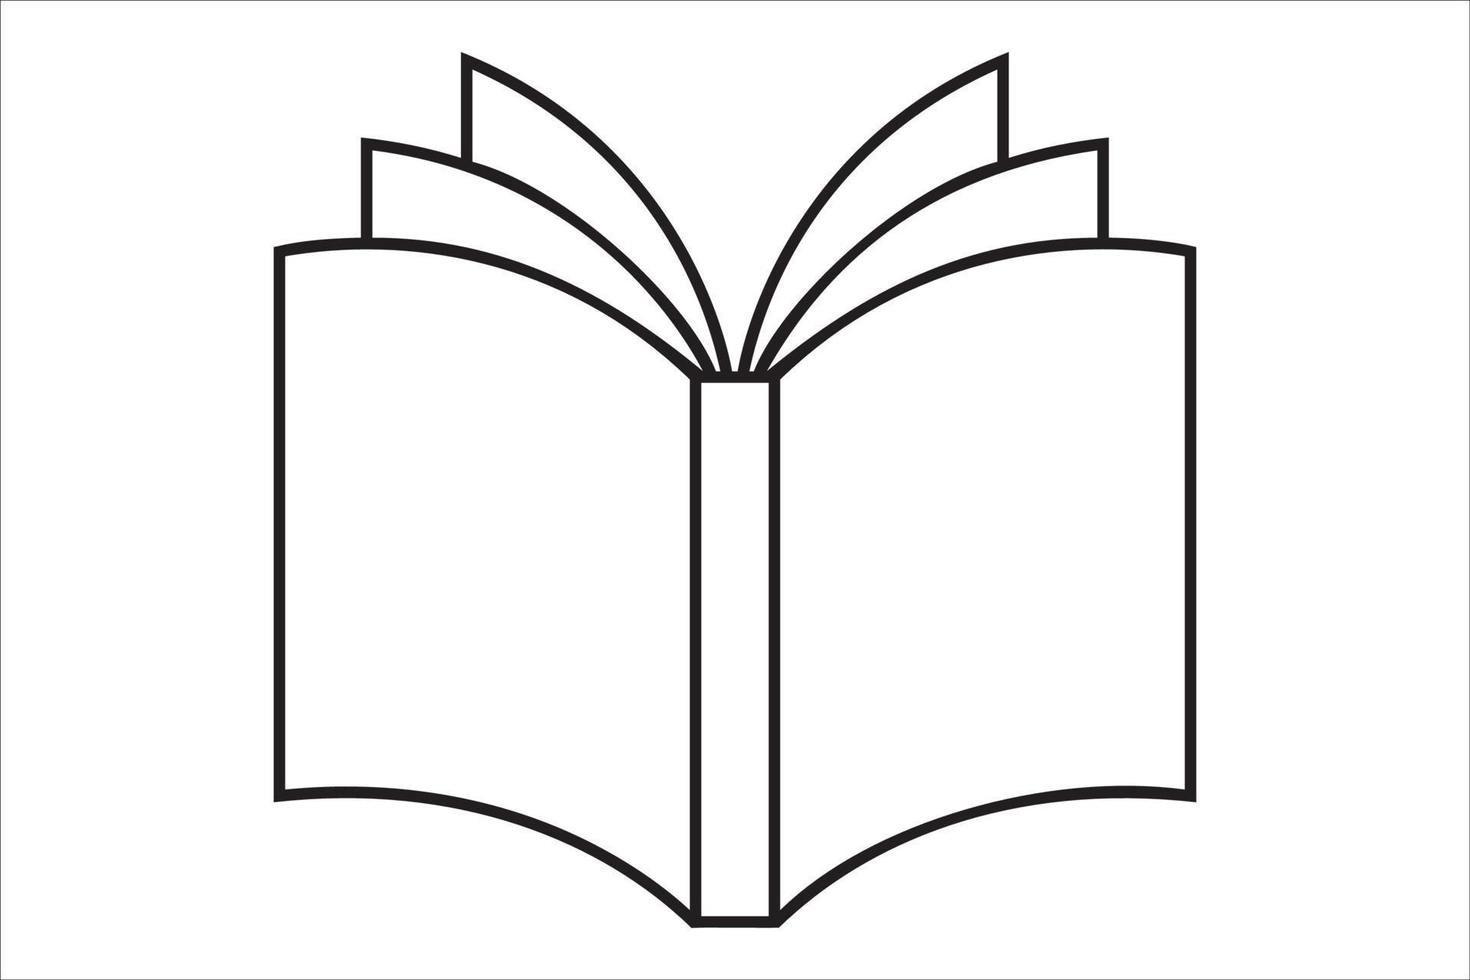 icône représentant un livre ouvert. icône de livre de vecteur avec une fine ligne noire. livre du verso. illustration de symbole de contour isolée sur fond blanc.